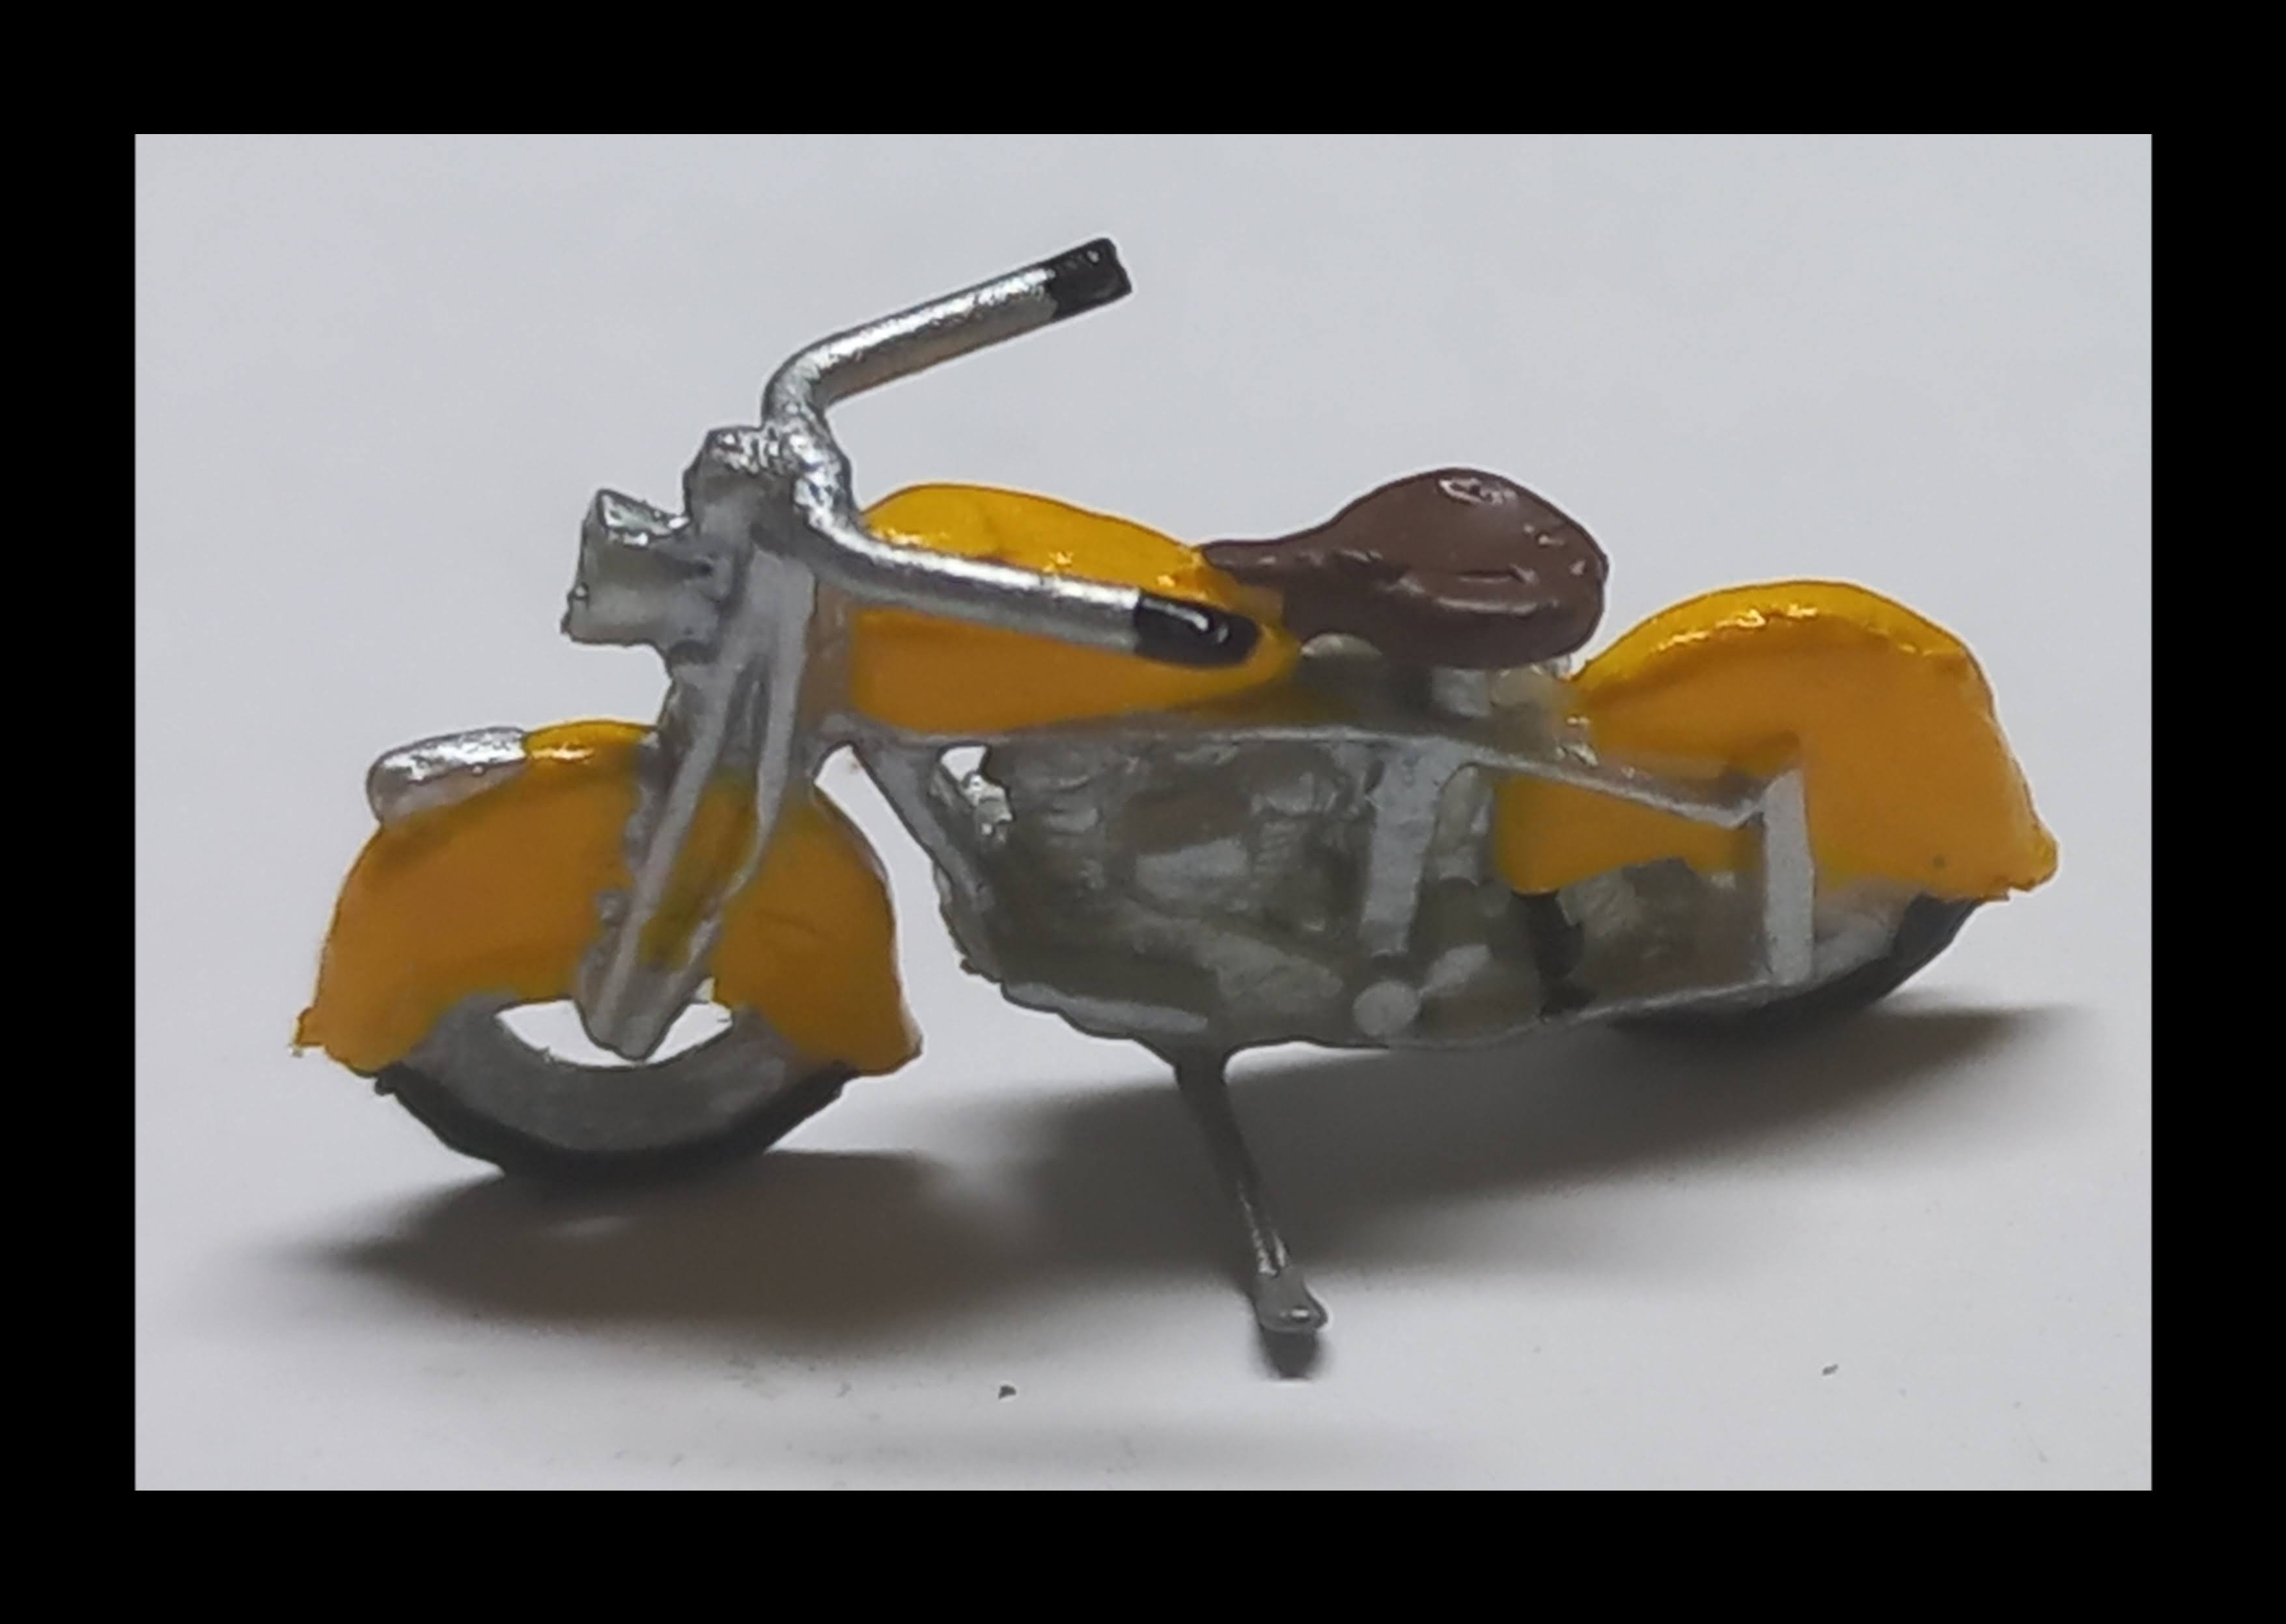 Motocicleta anos 40 Amarelo Nº 0009 - HO